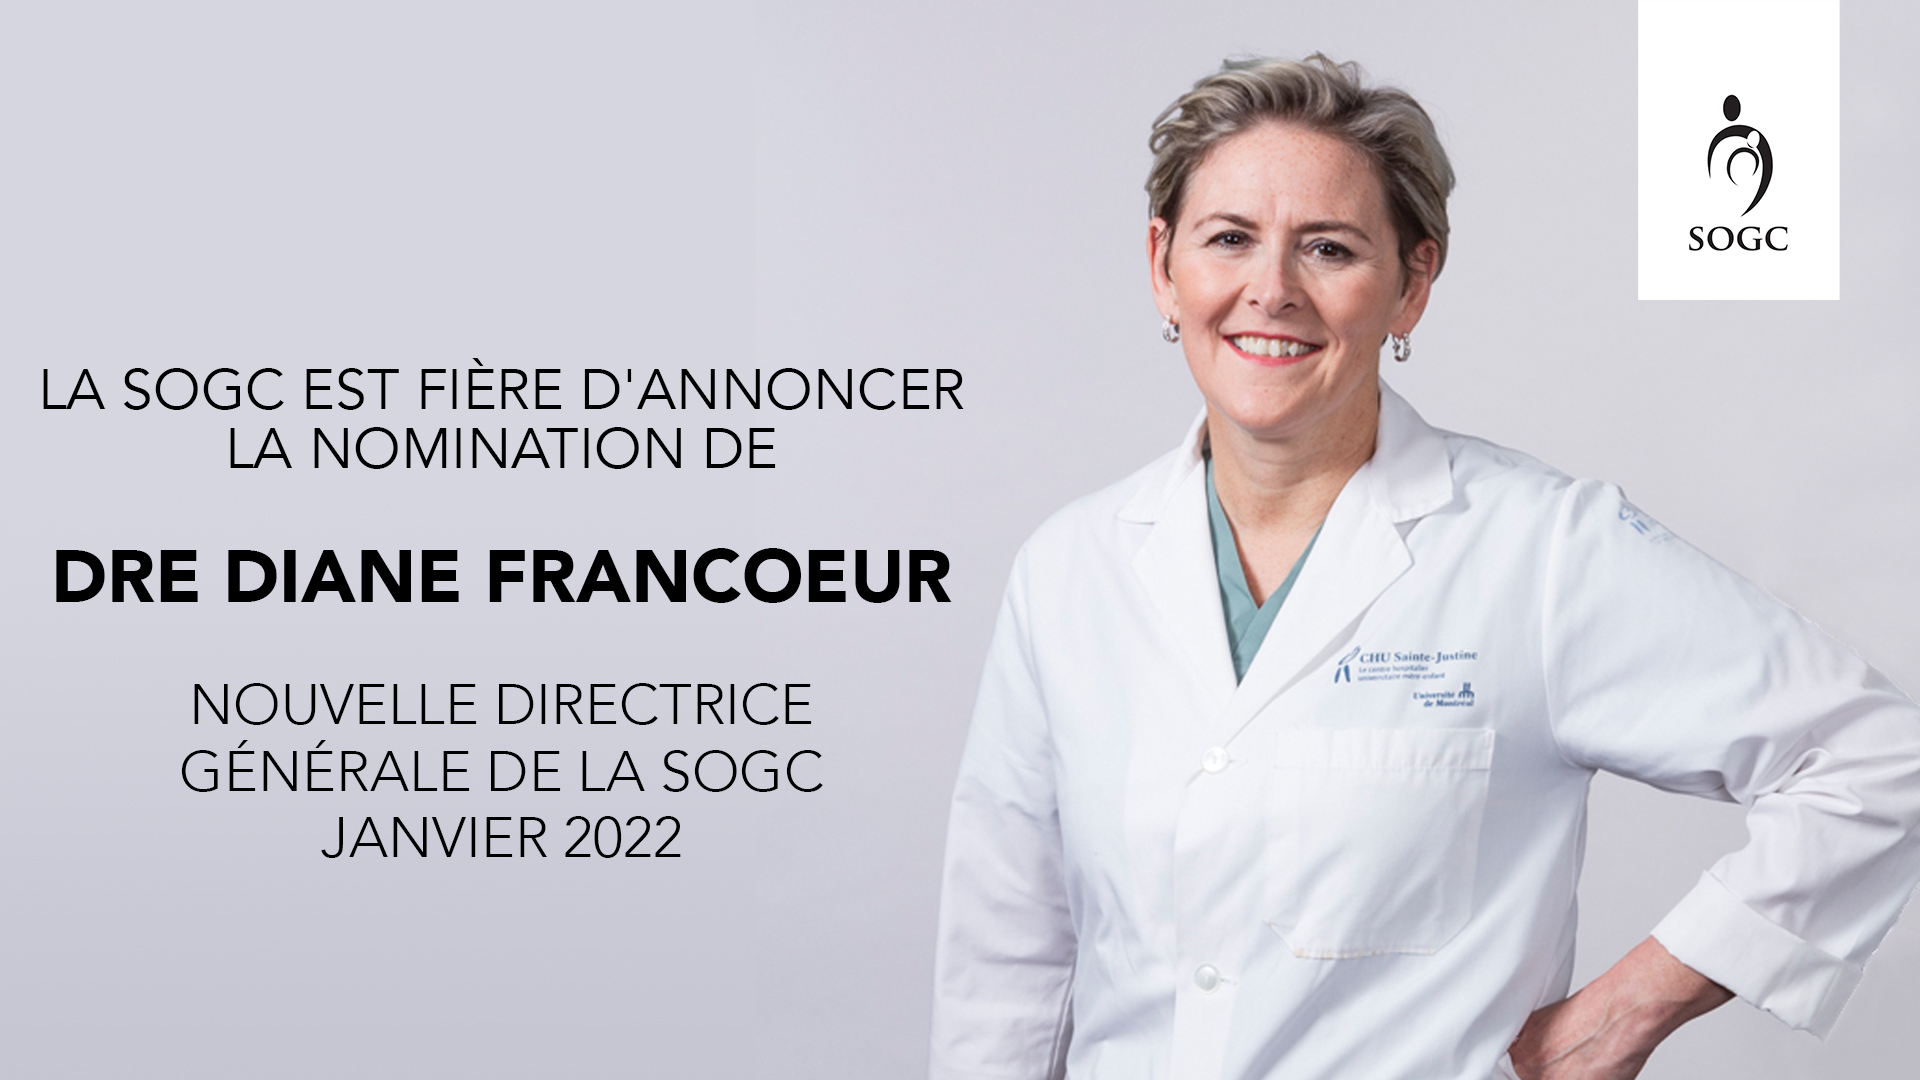 Diane Francoeur